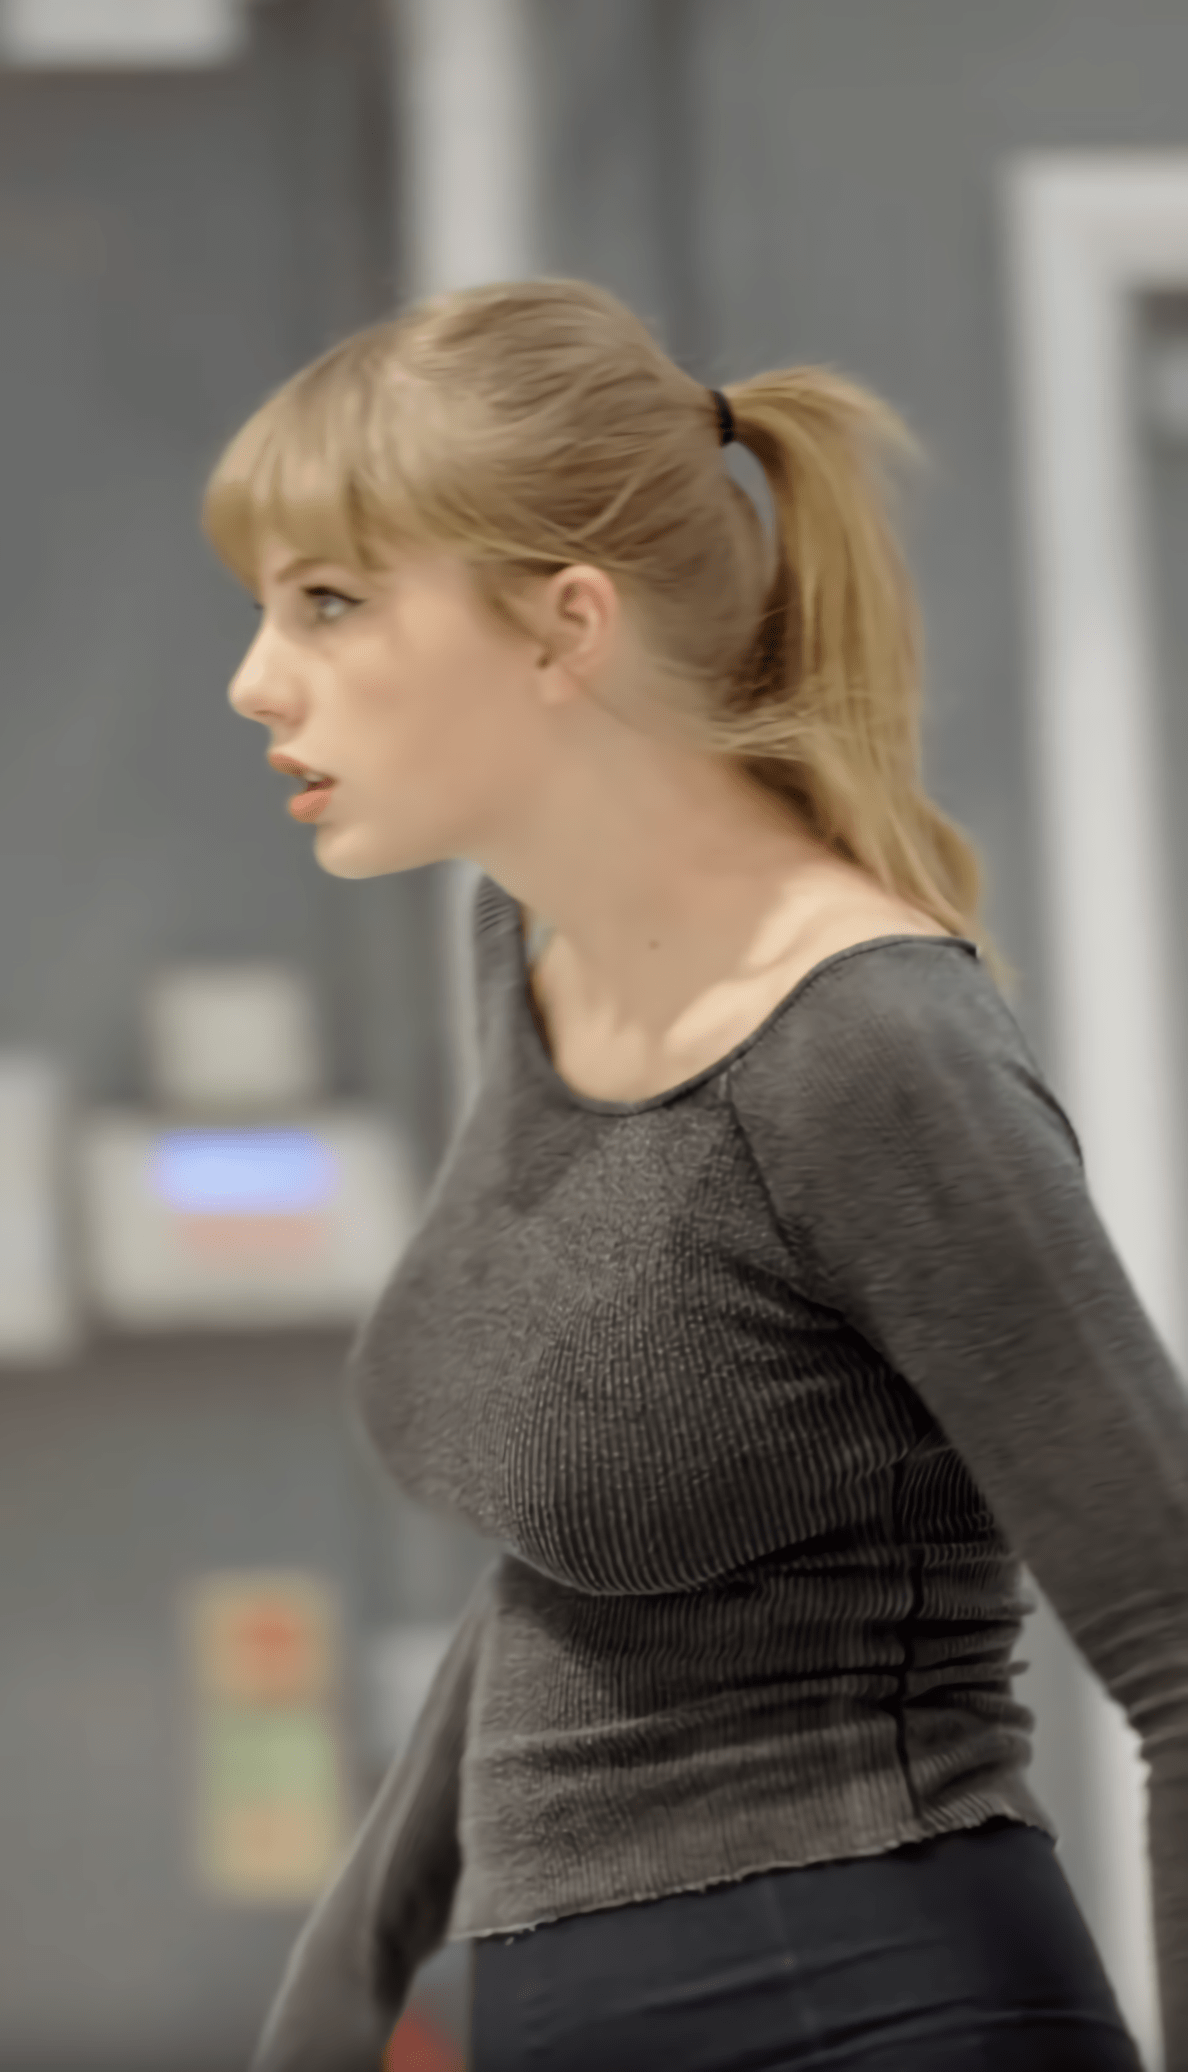 Taylor Swifts fat tits